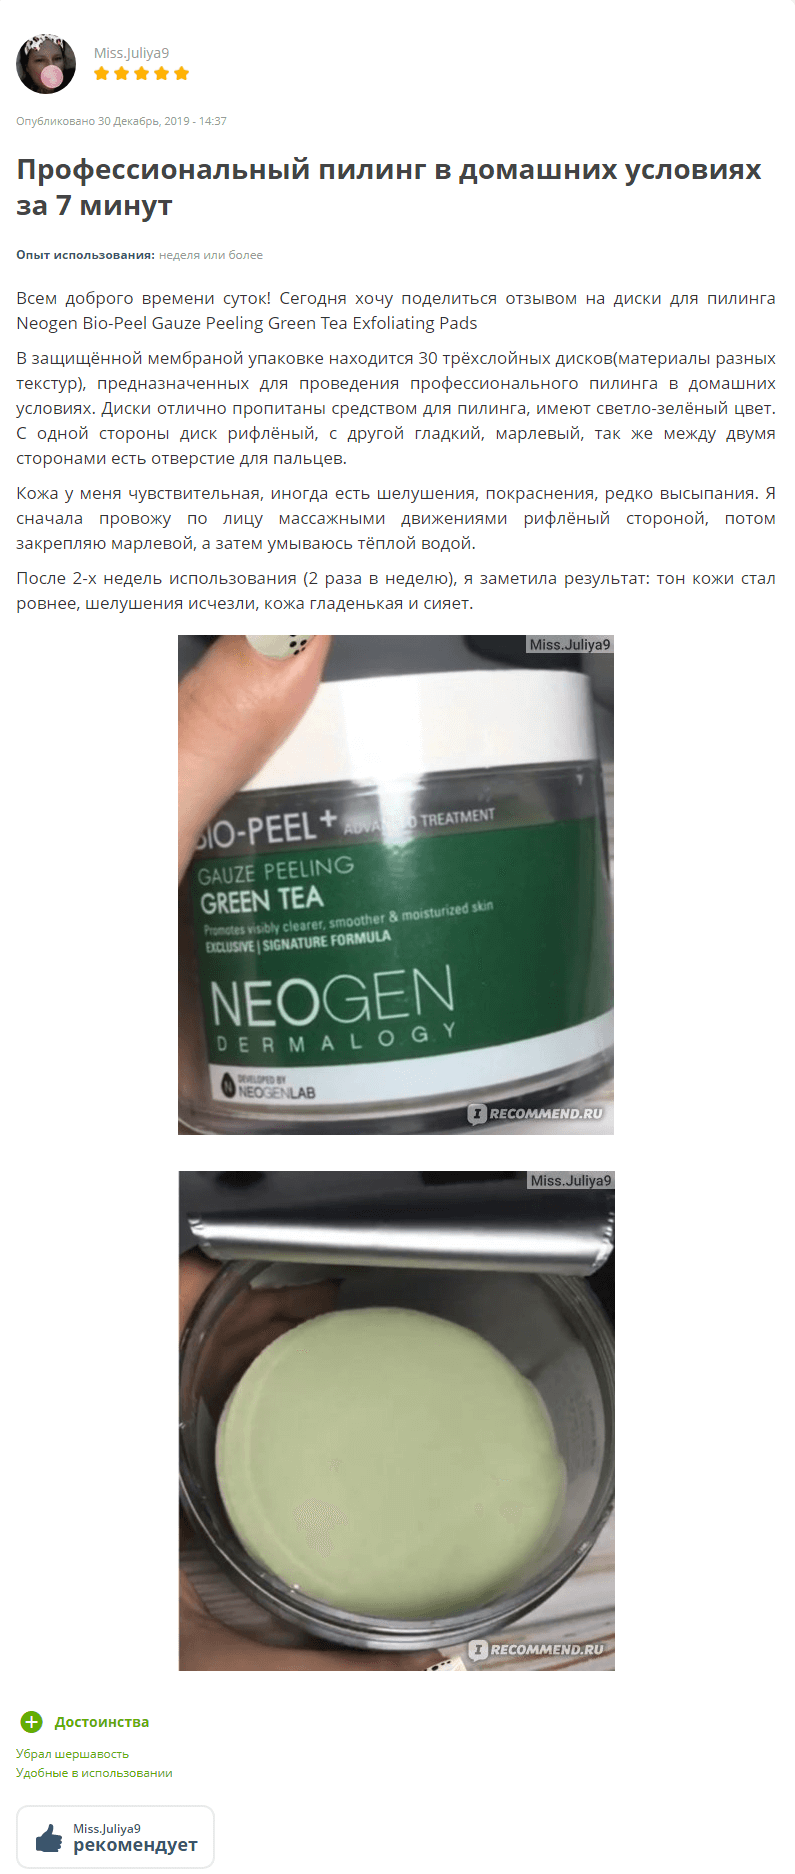 dermatology_biopeel_gauze_peeling_green_tea_neogen_1